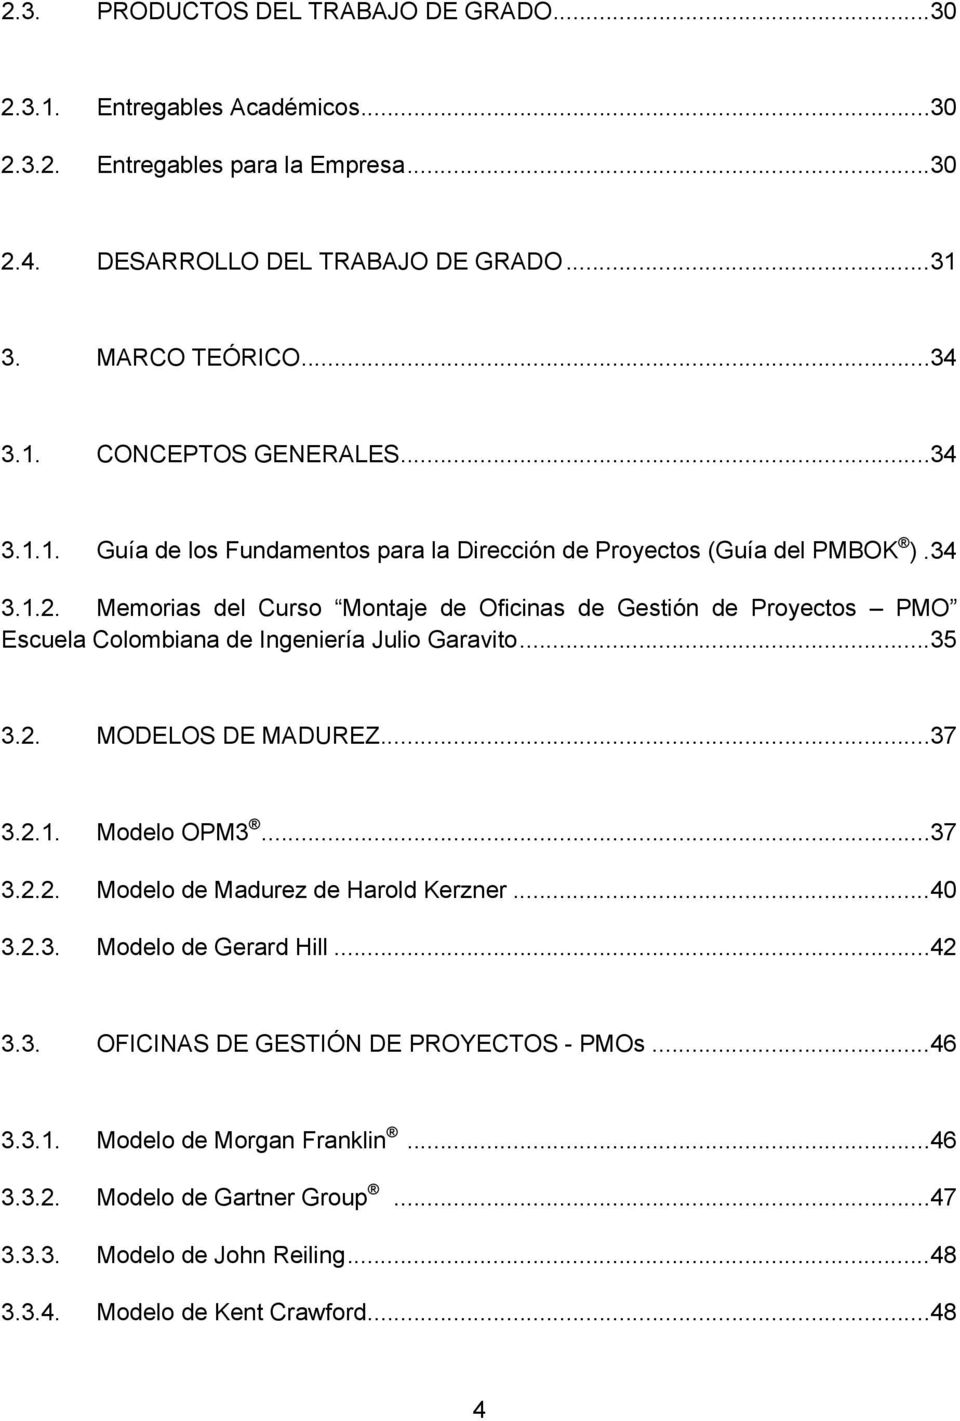 Memorias del Curso Montaje de Oficinas de Gestión de Proyectos PMO Escuela Colombiana de Ingeniería Julio Garavito... 35 3.2. MODELOS DE MADUREZ... 37 3.2.1. Modelo OPM3... 37 3.2.2. Modelo de Madurez de Harold Kerzner.